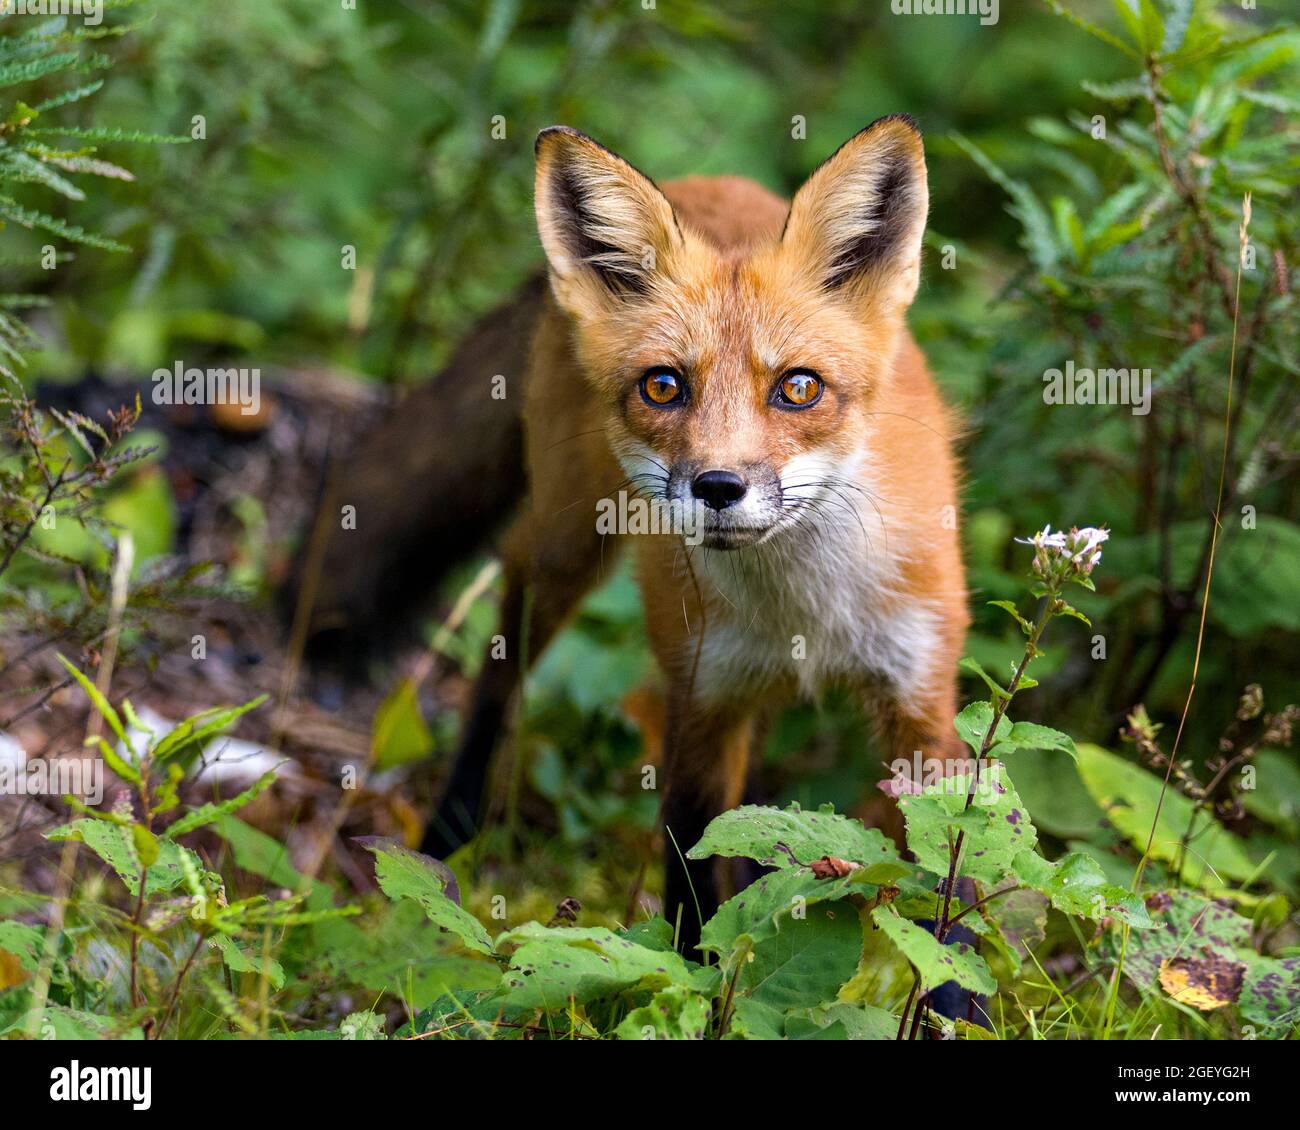 Vista del profilo di Red Fox close-up guardando la fotocamera con sfondo e primo piano sfumato nel suo ambiente e habitat . Immagine Fox. Colpo di testa. Foto Stock